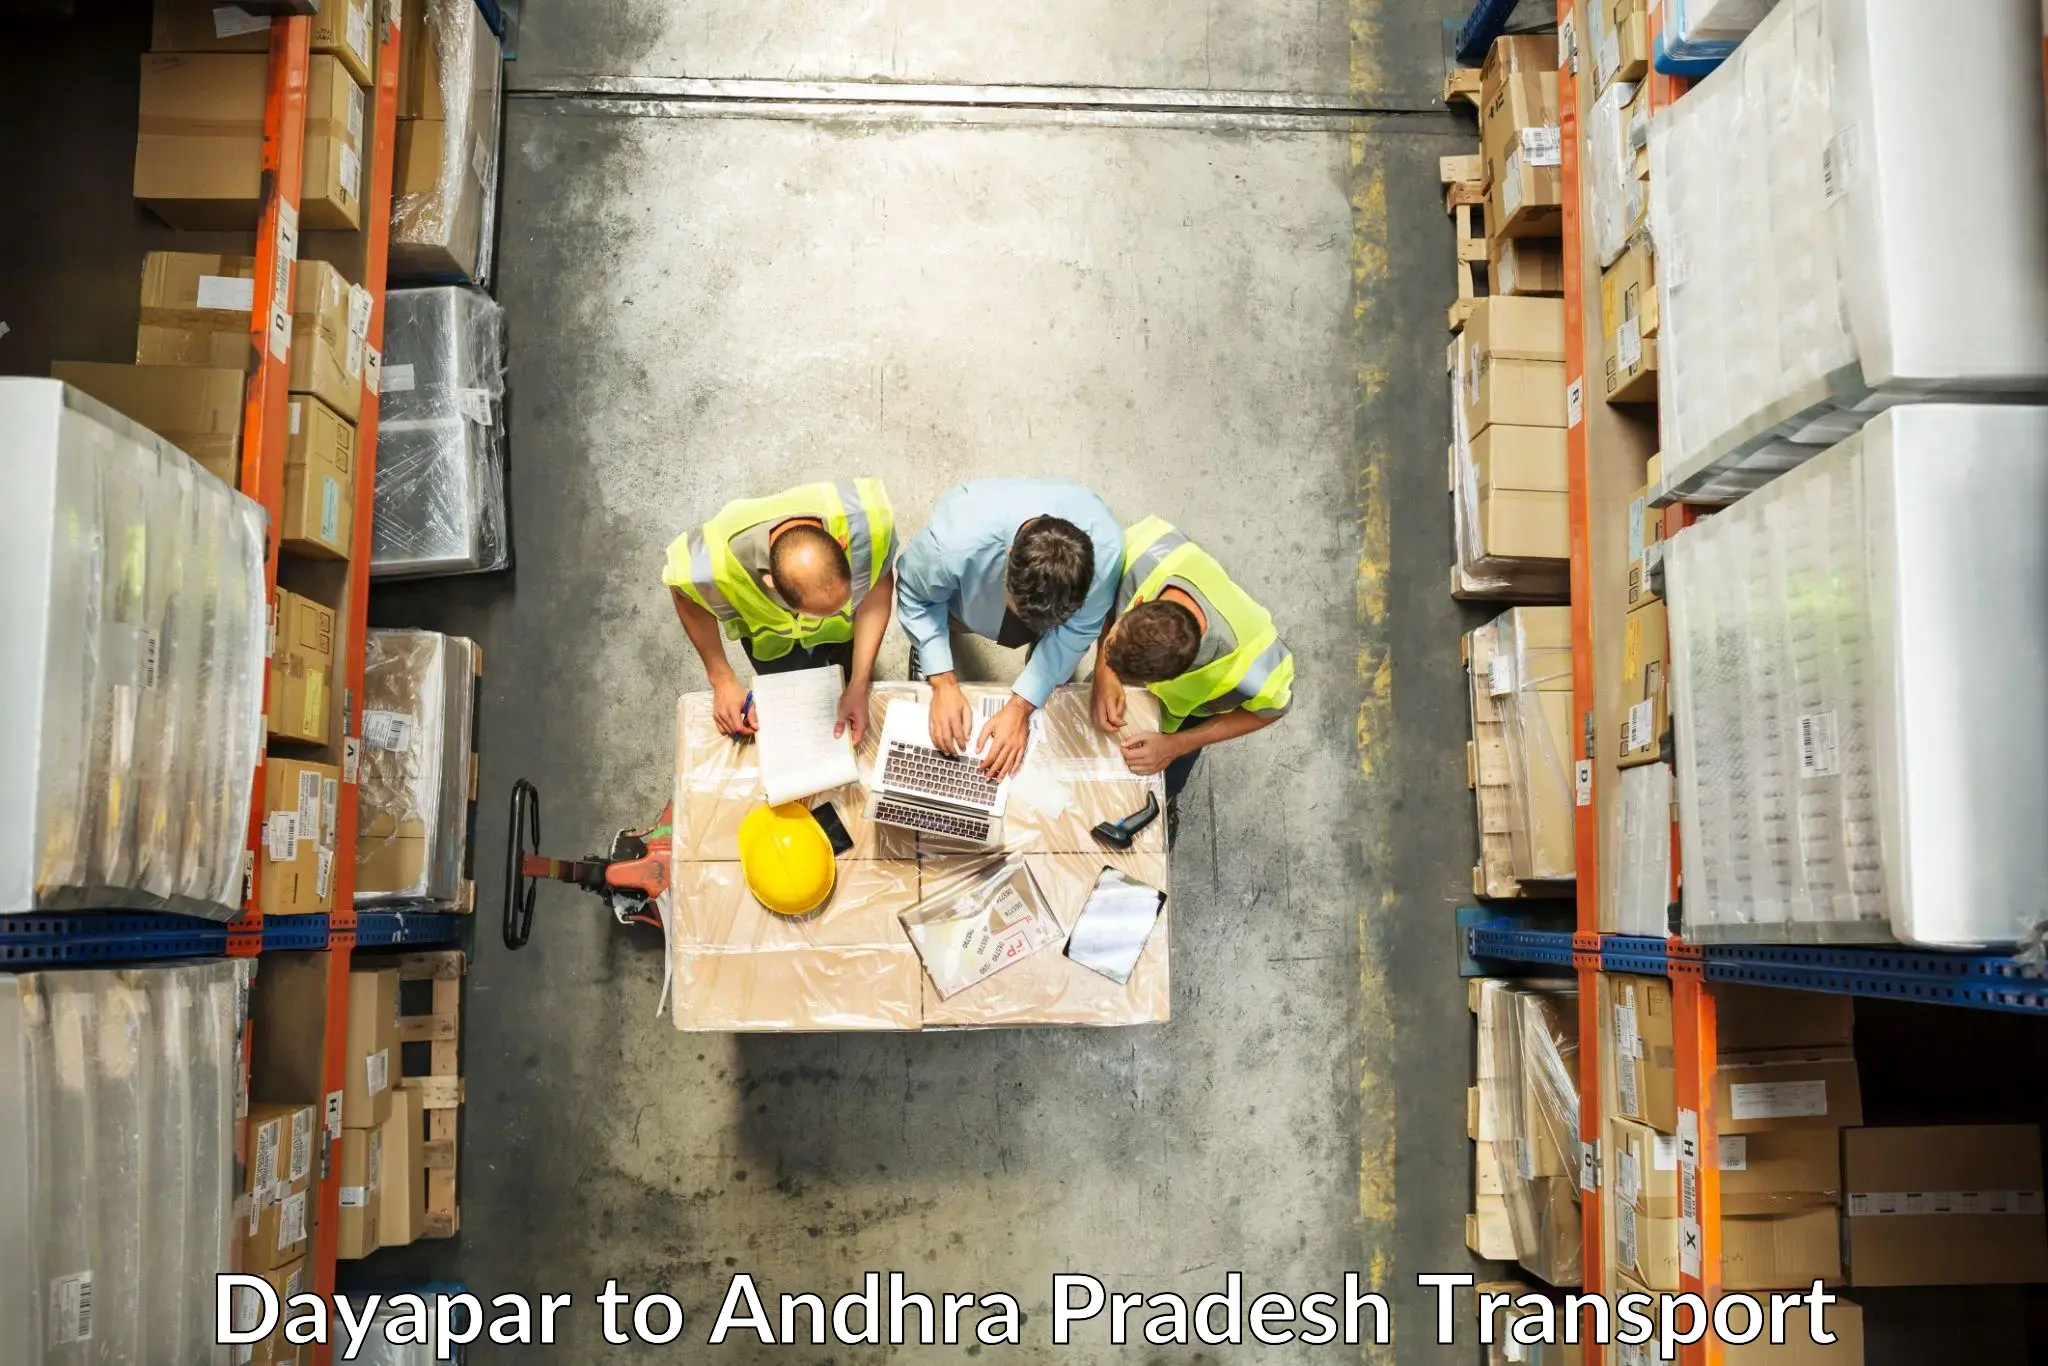 Furniture transport service Dayapar to Andhra Pradesh